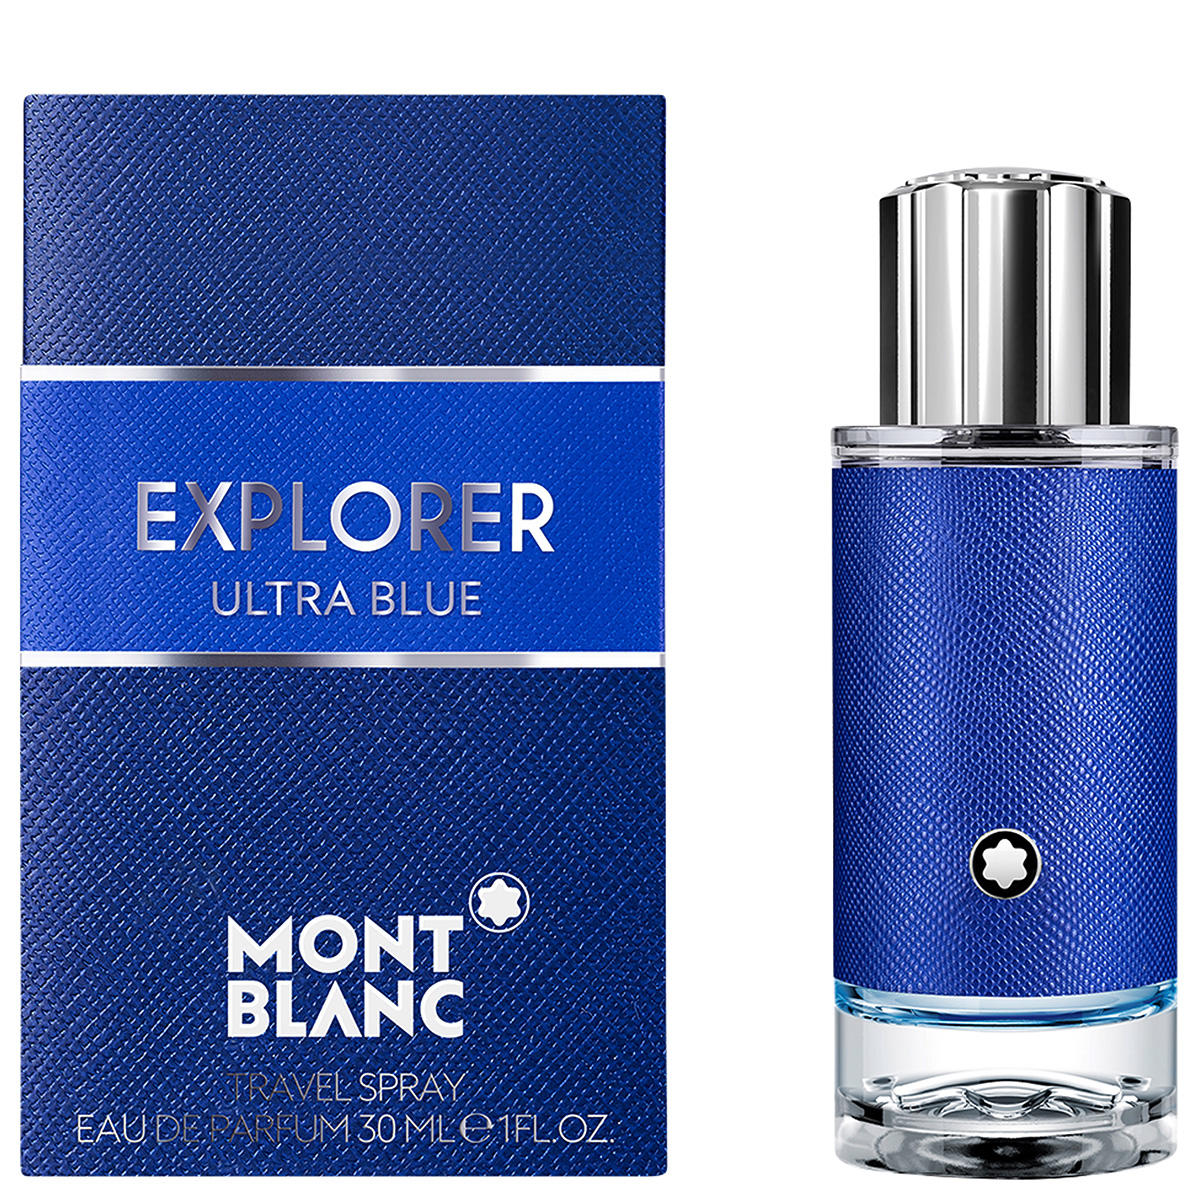 Montblanc Explorer Ultra Blue Eau de Parfum 30 ml - 2